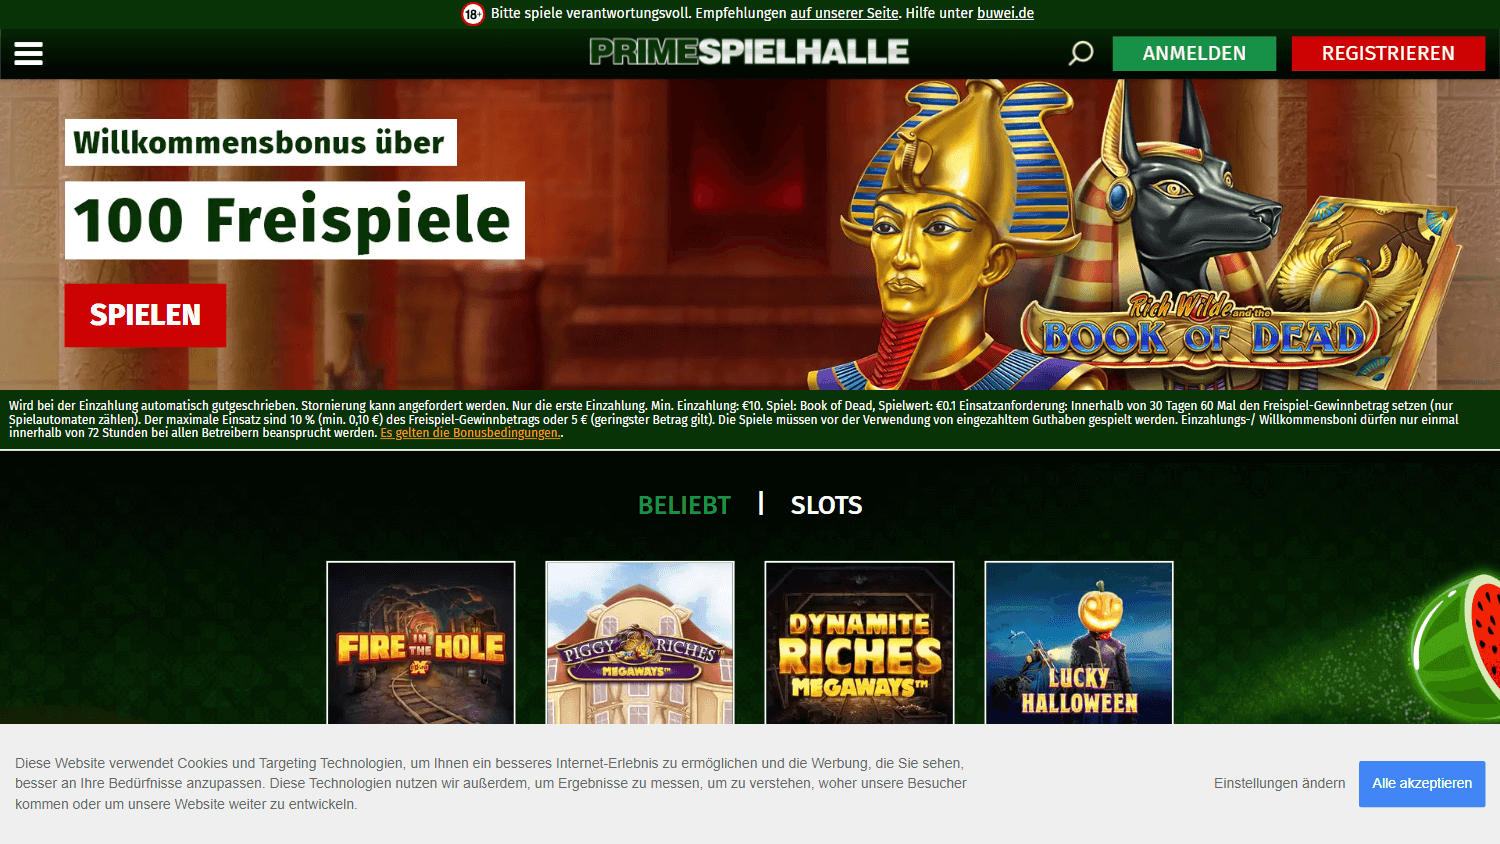 primespielhalle_casino_homepage_desktop